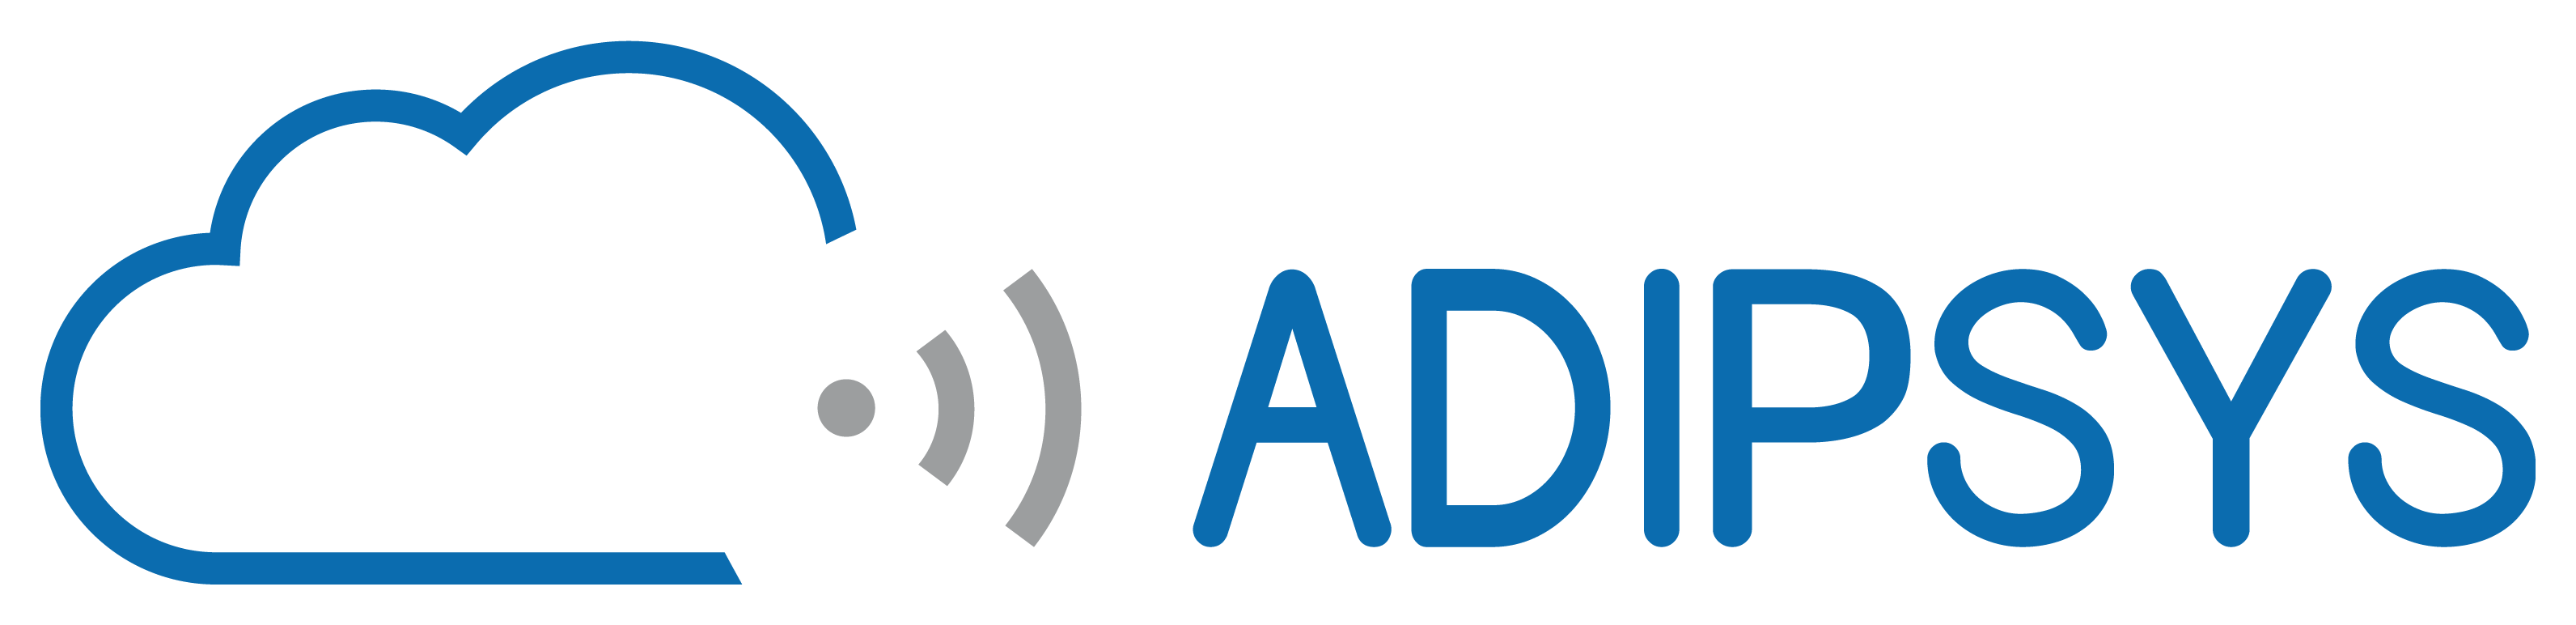 Accueil - Logo ADIPSYS